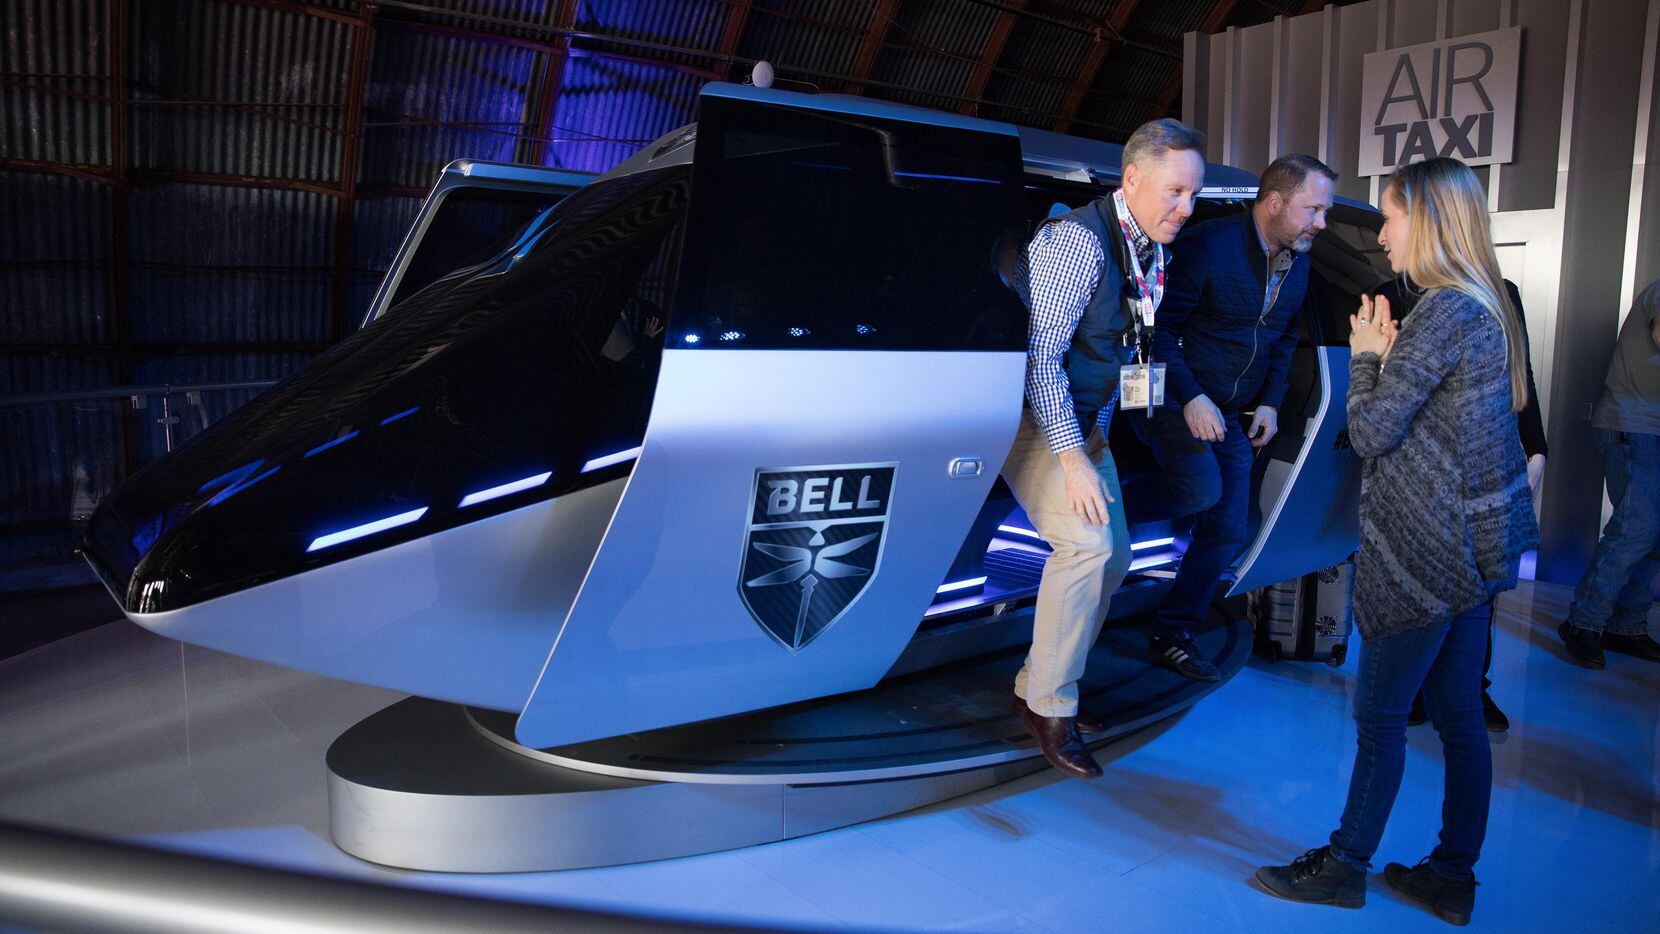 Bell Helicopters muestra un prototipo de taxi aéreo durante la conferencia SXSW en Austin,...